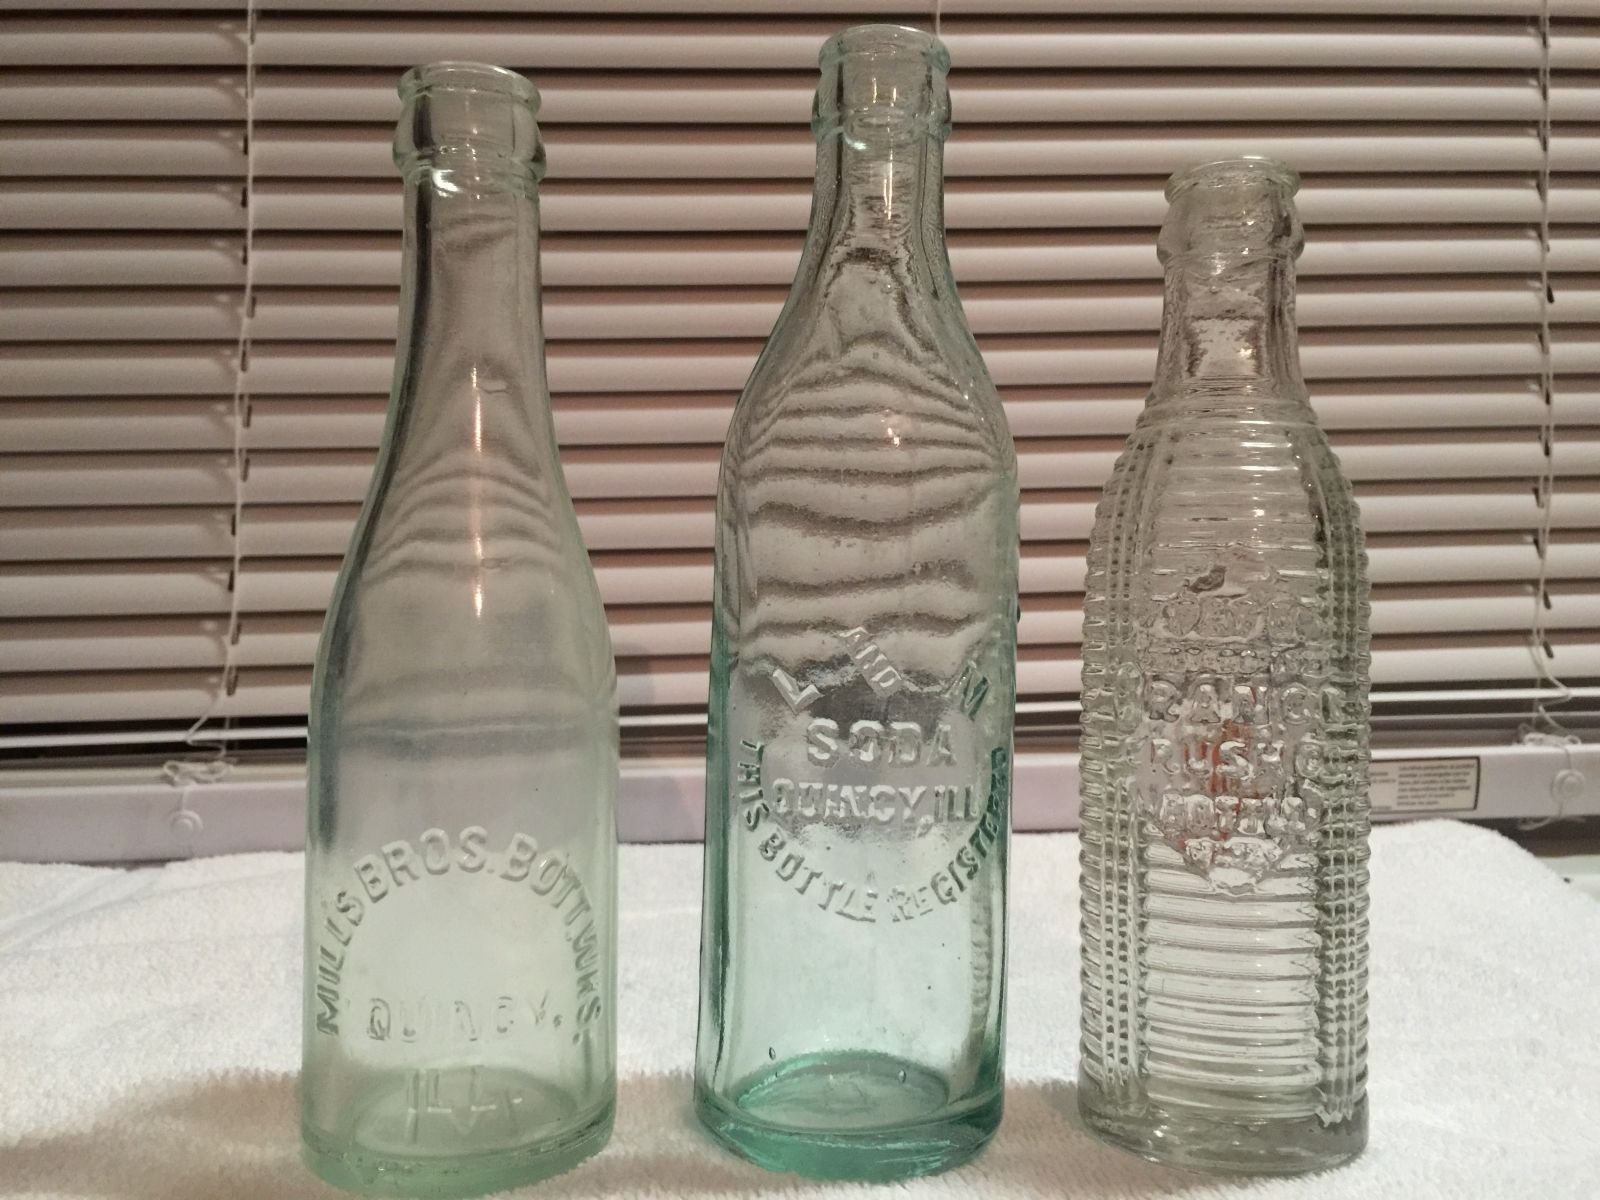 Quincy bottles